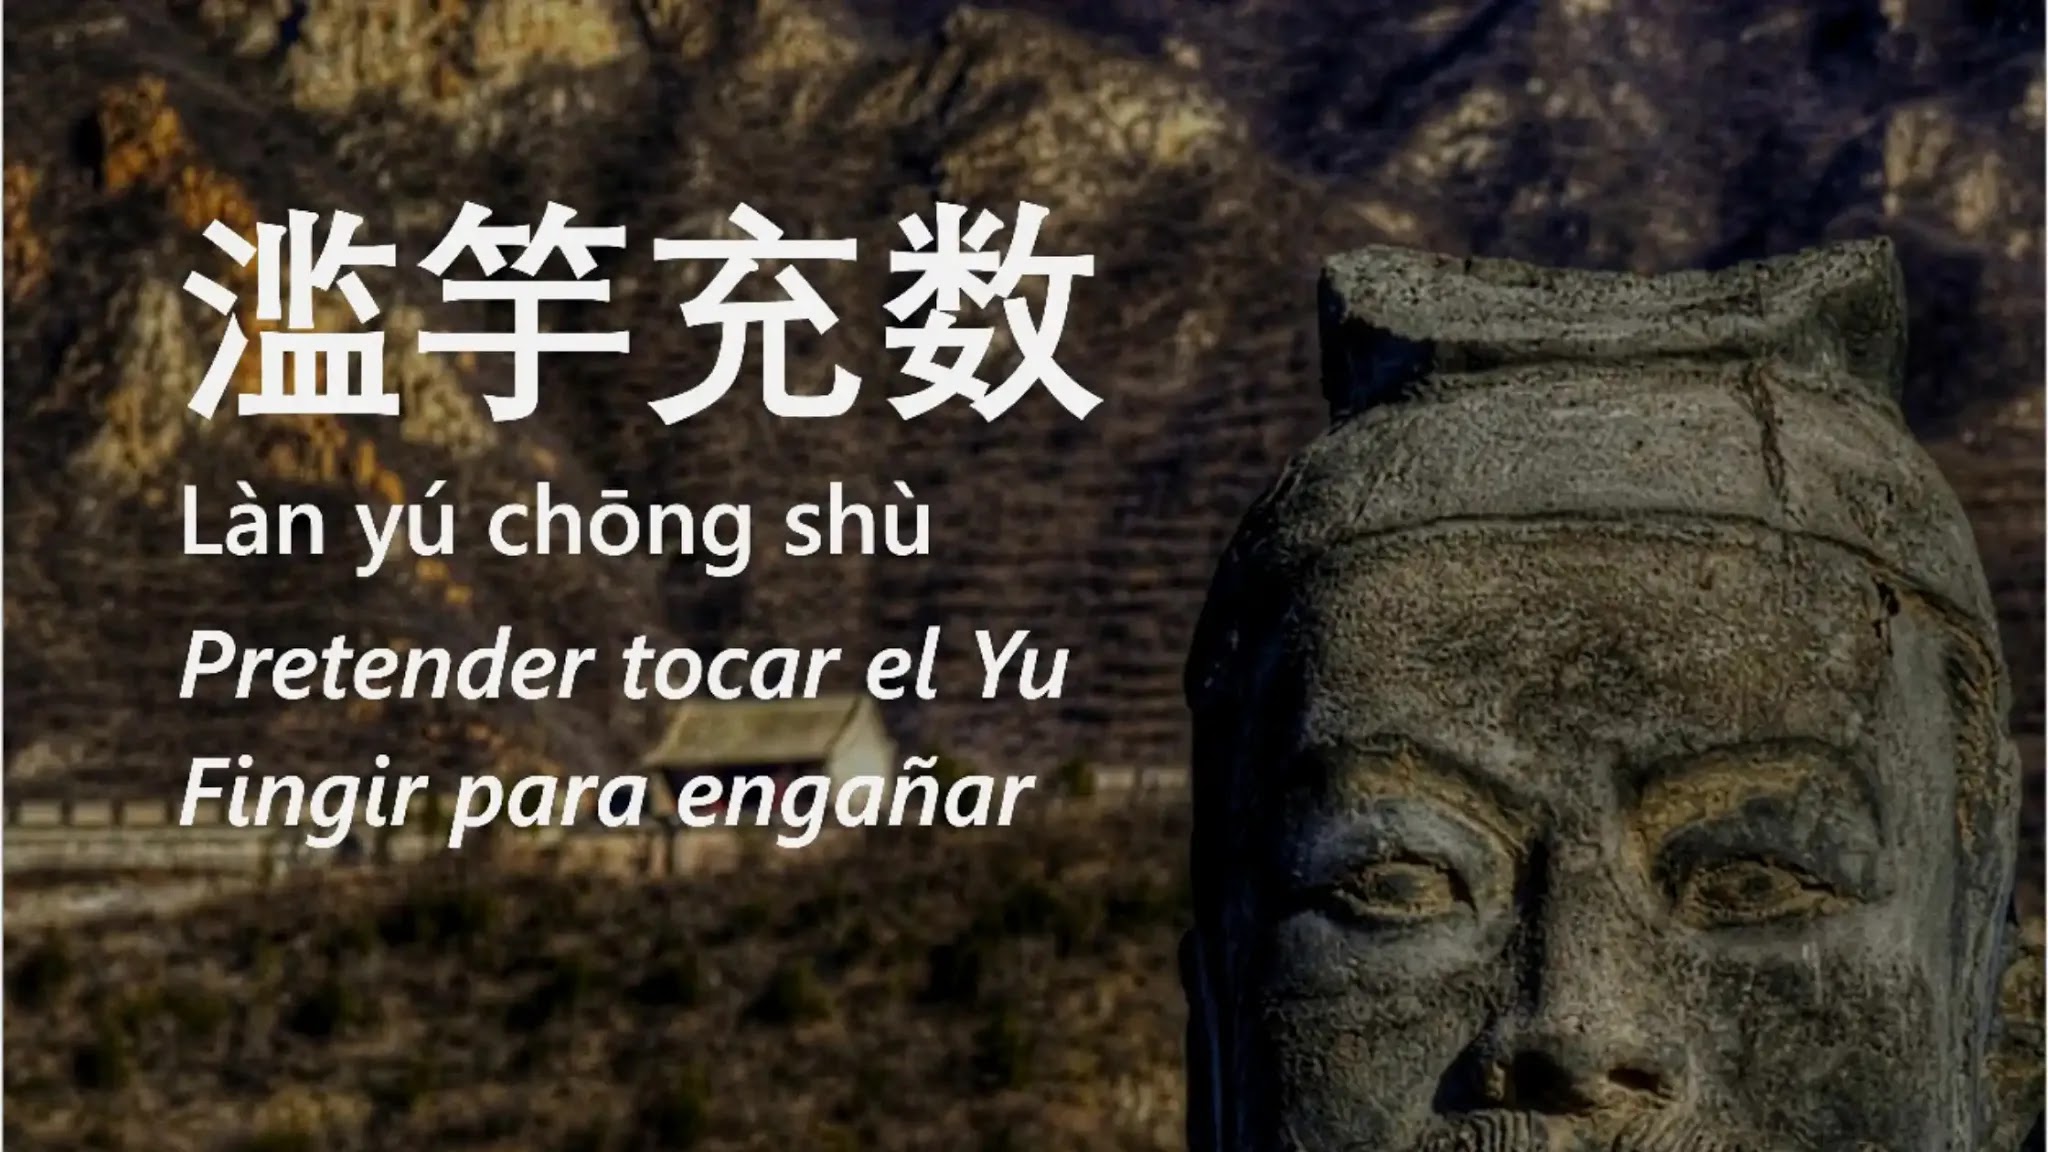 Historia detrás del proverbio chino: 滥竽充数 (Làn yú chōng shù) Fingir para engañar